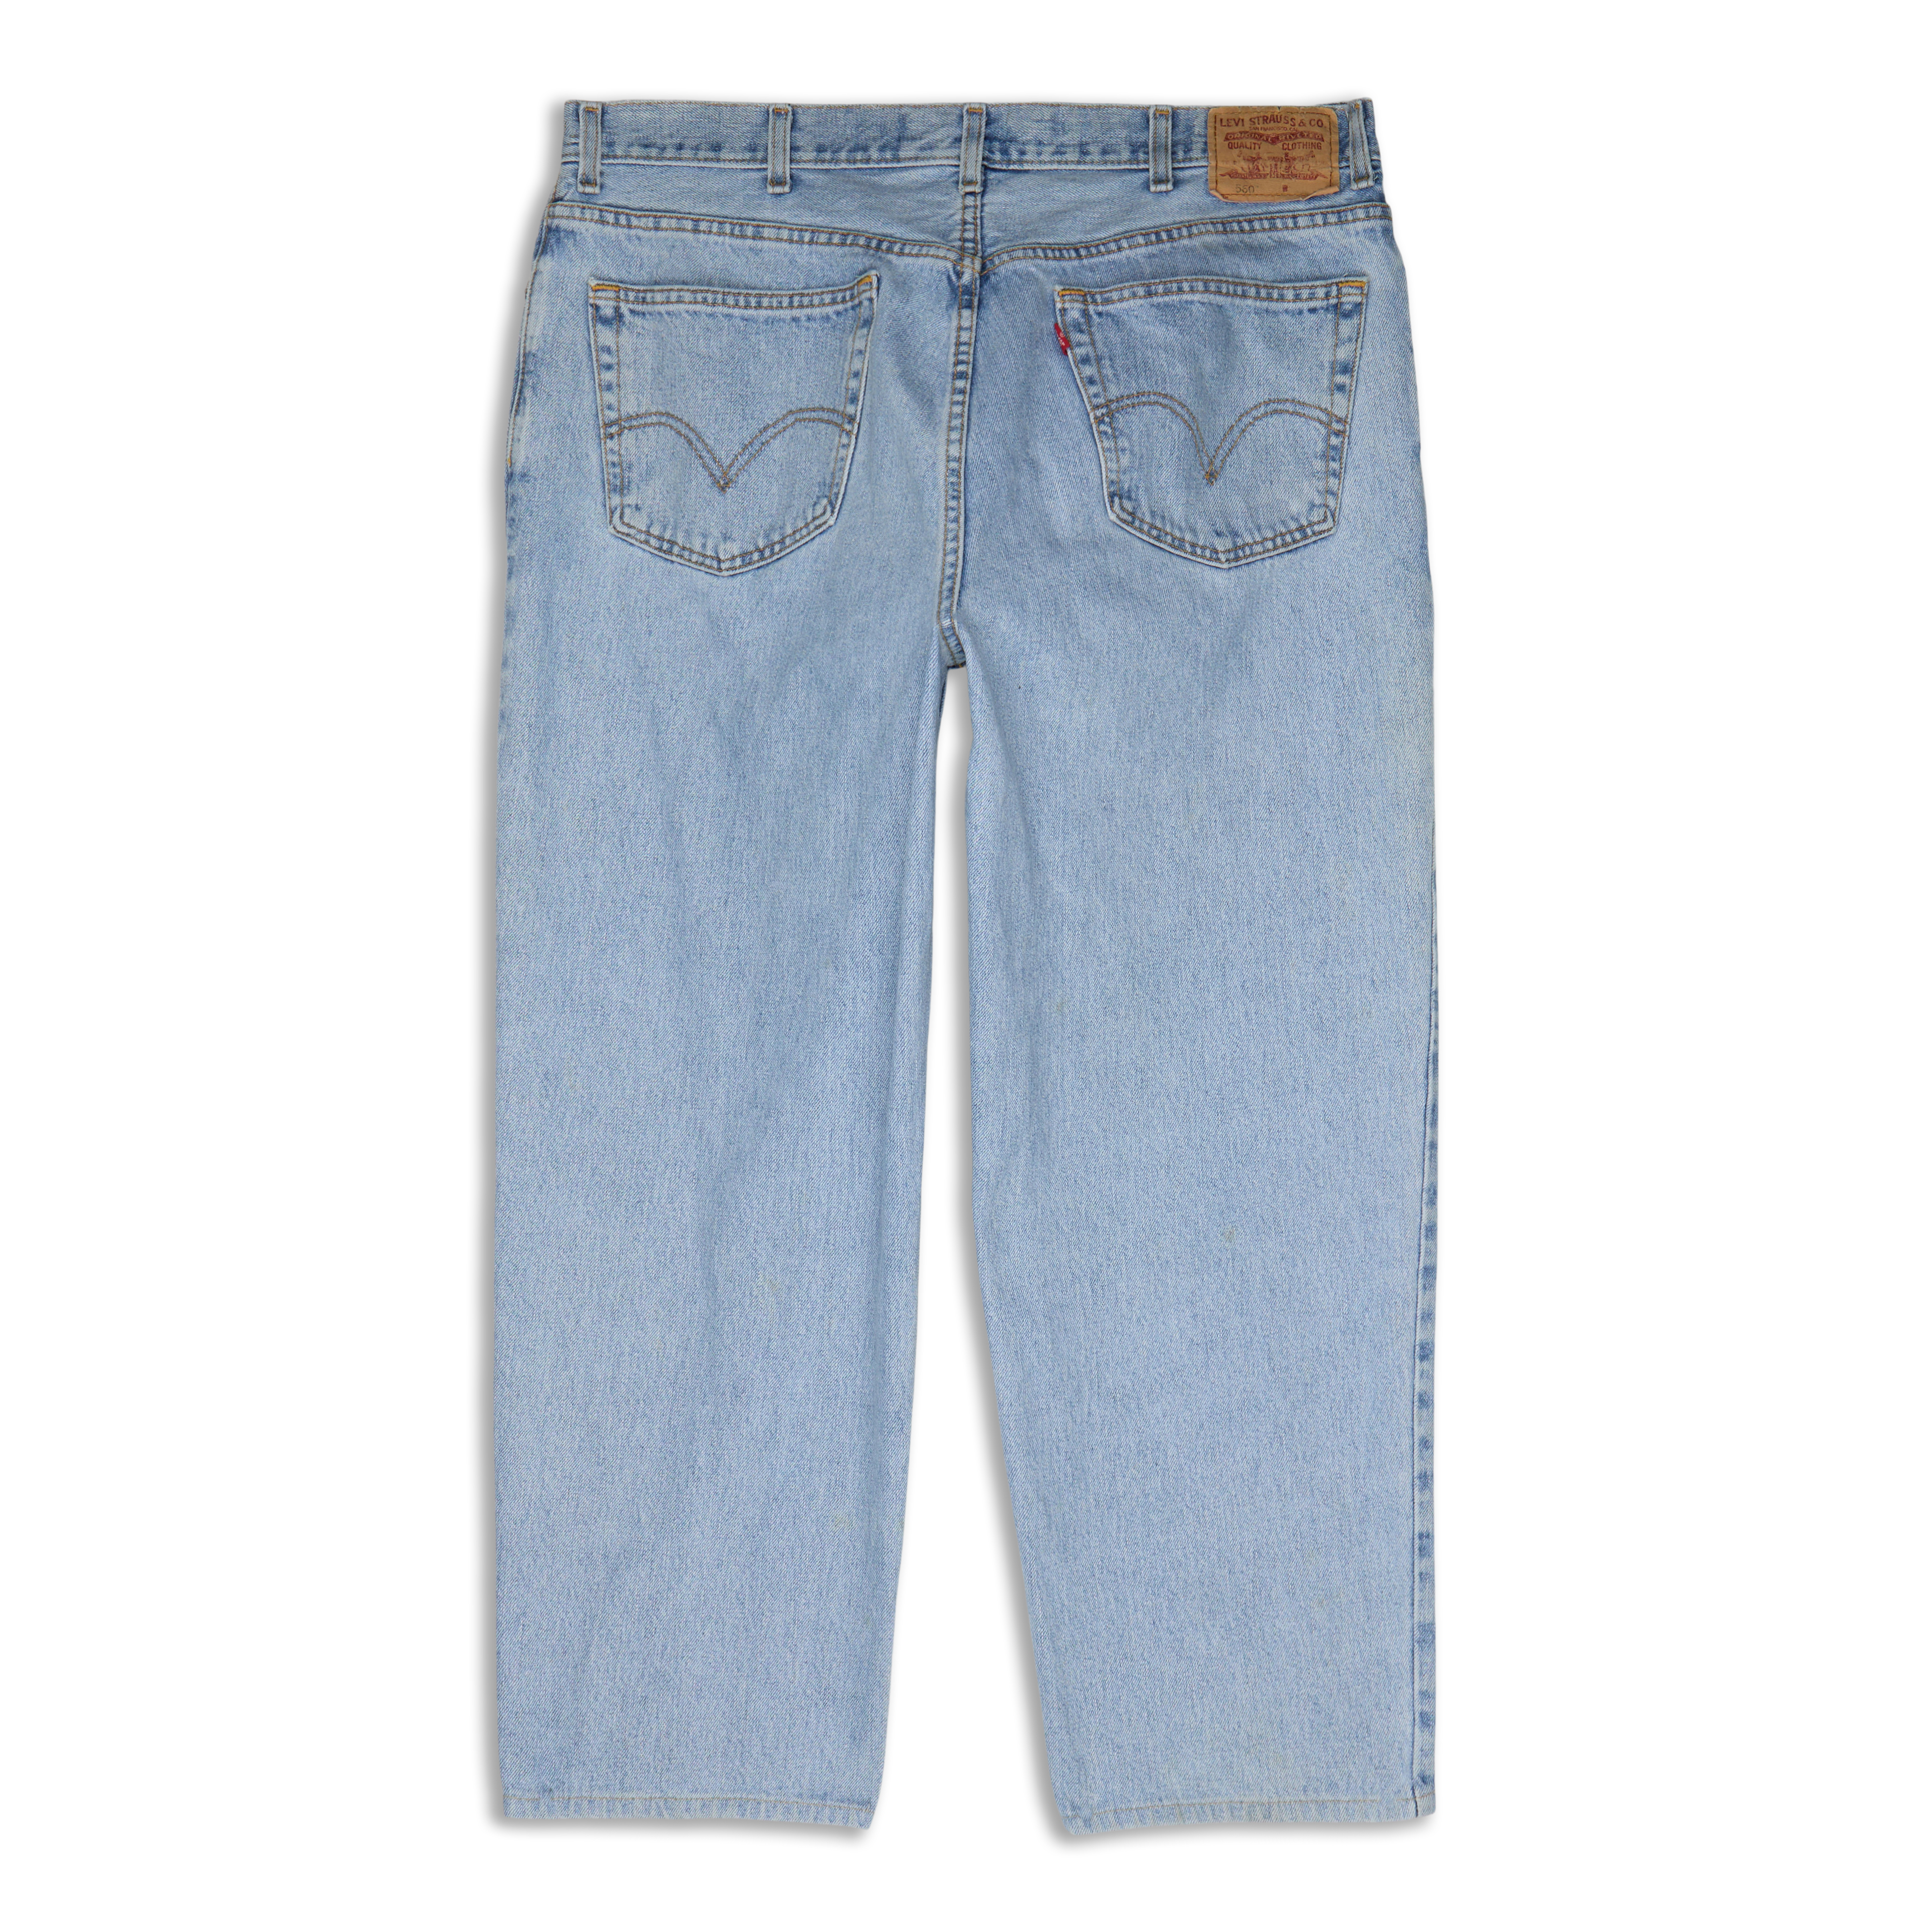 560™ Comfort Fit Men's Jeans